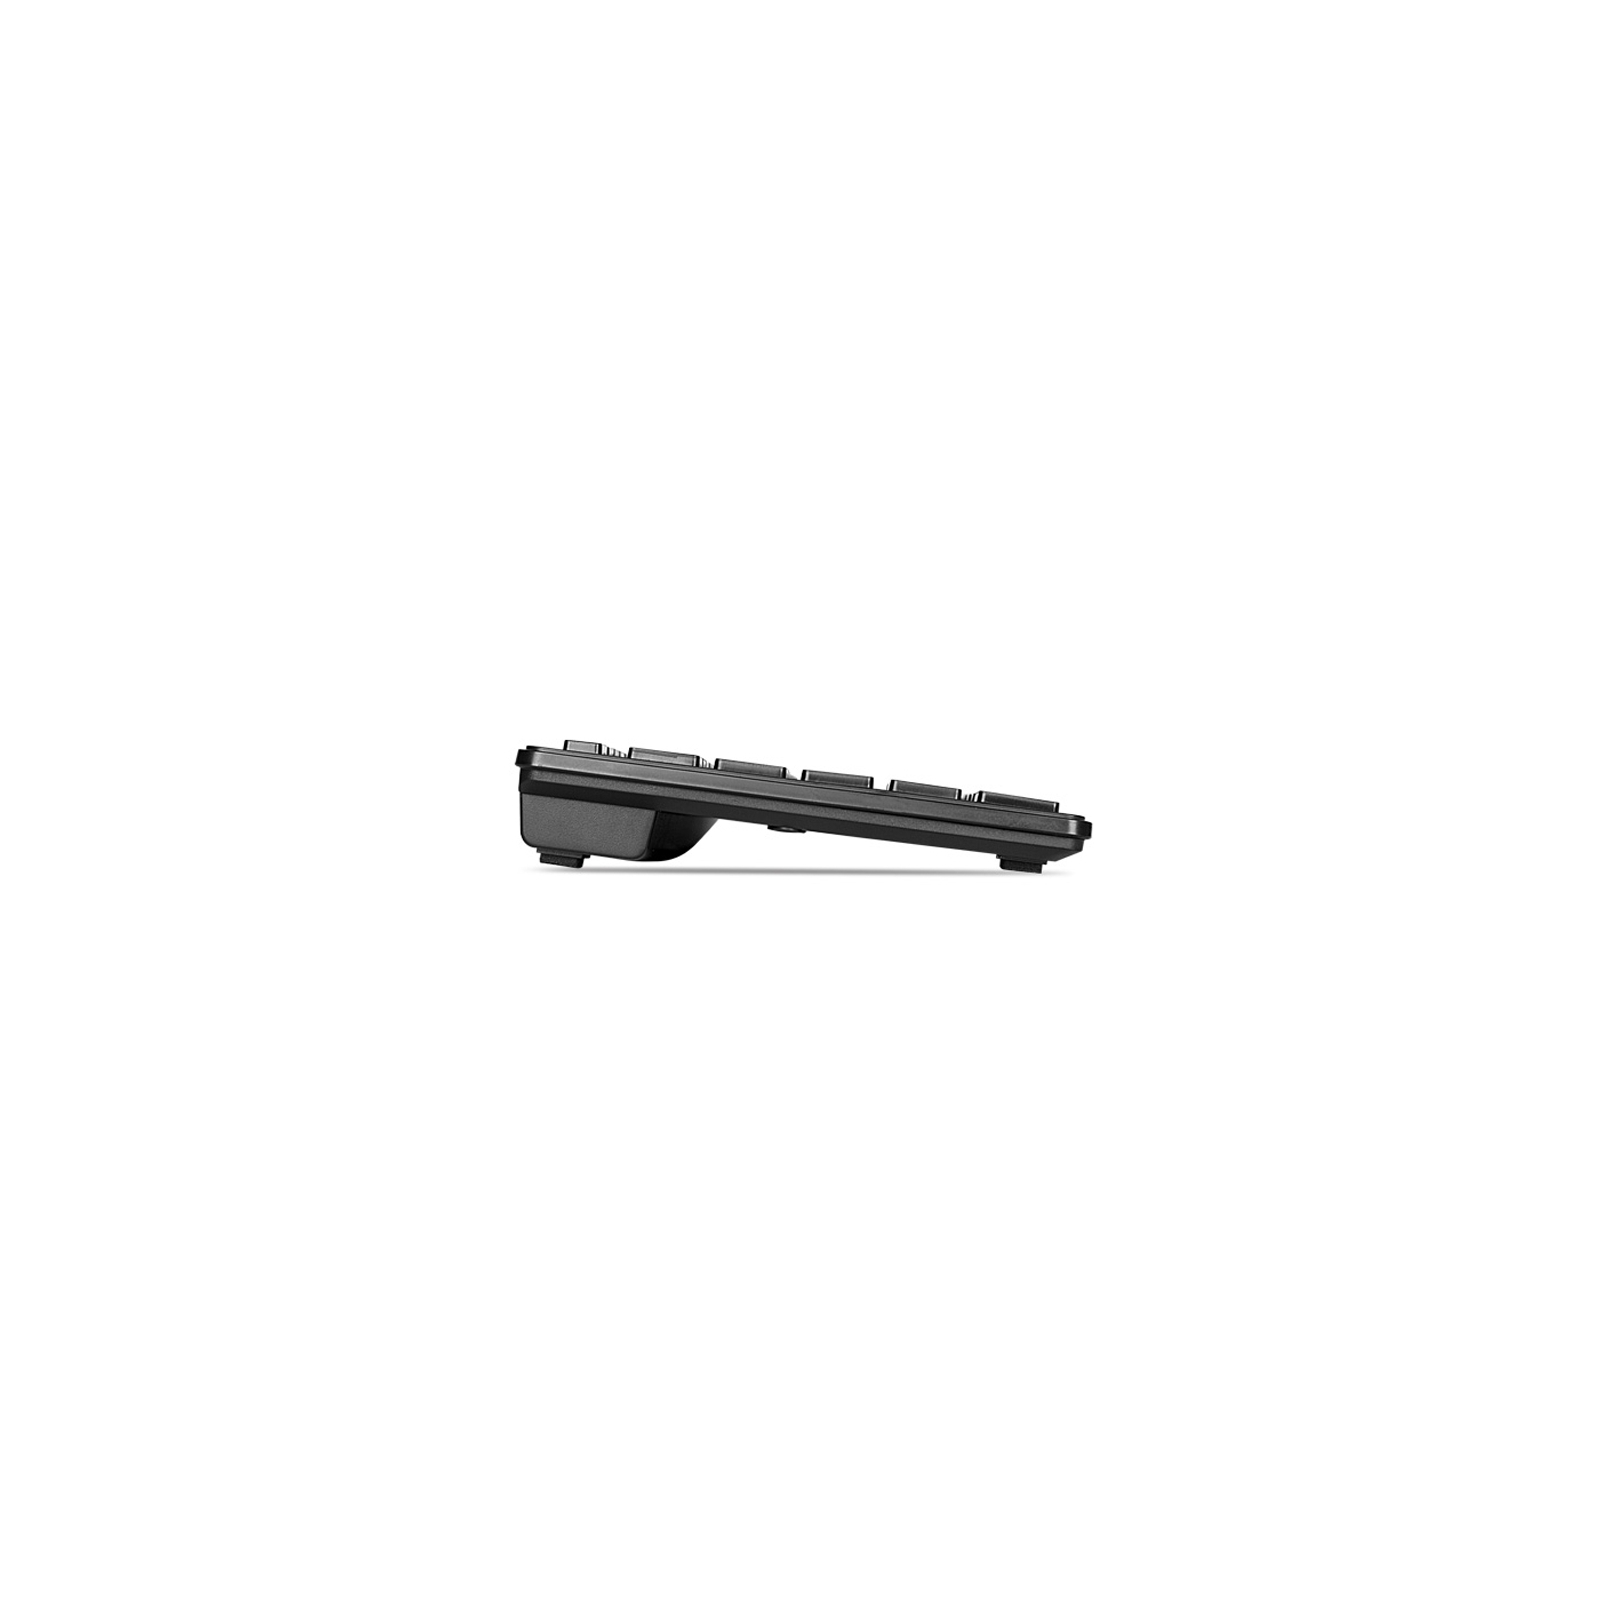 Клавиатура REAL-EL 7080 Comfort, USB, black изображение 3